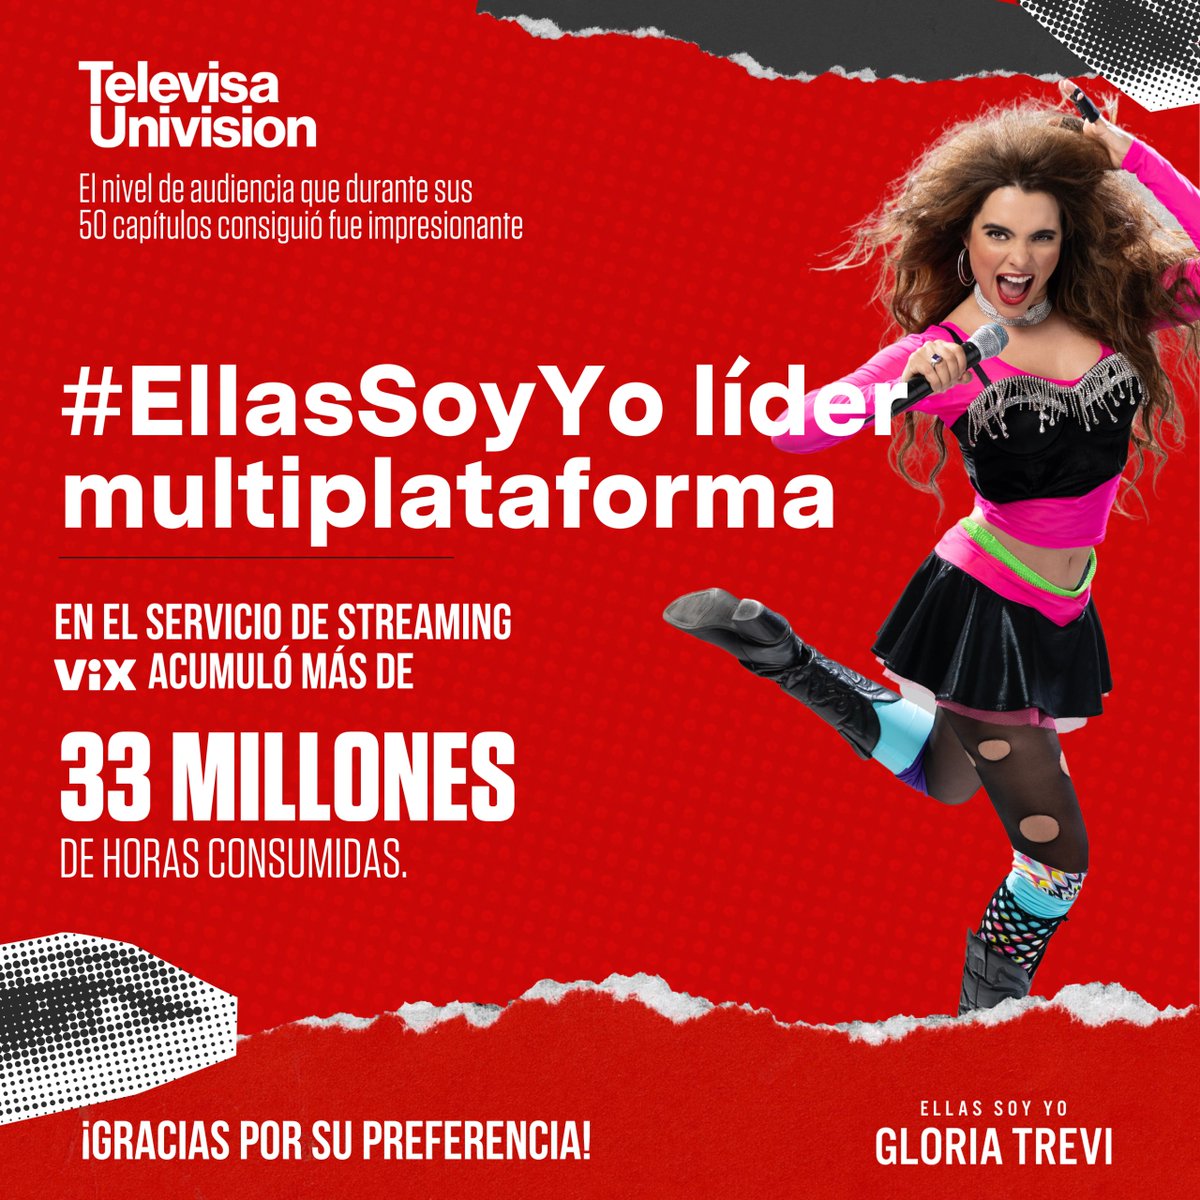 Gracias a tu preferencia, #EllasSoyYo acumuló más de 33 millones de horas consumidas en #VIX 📺